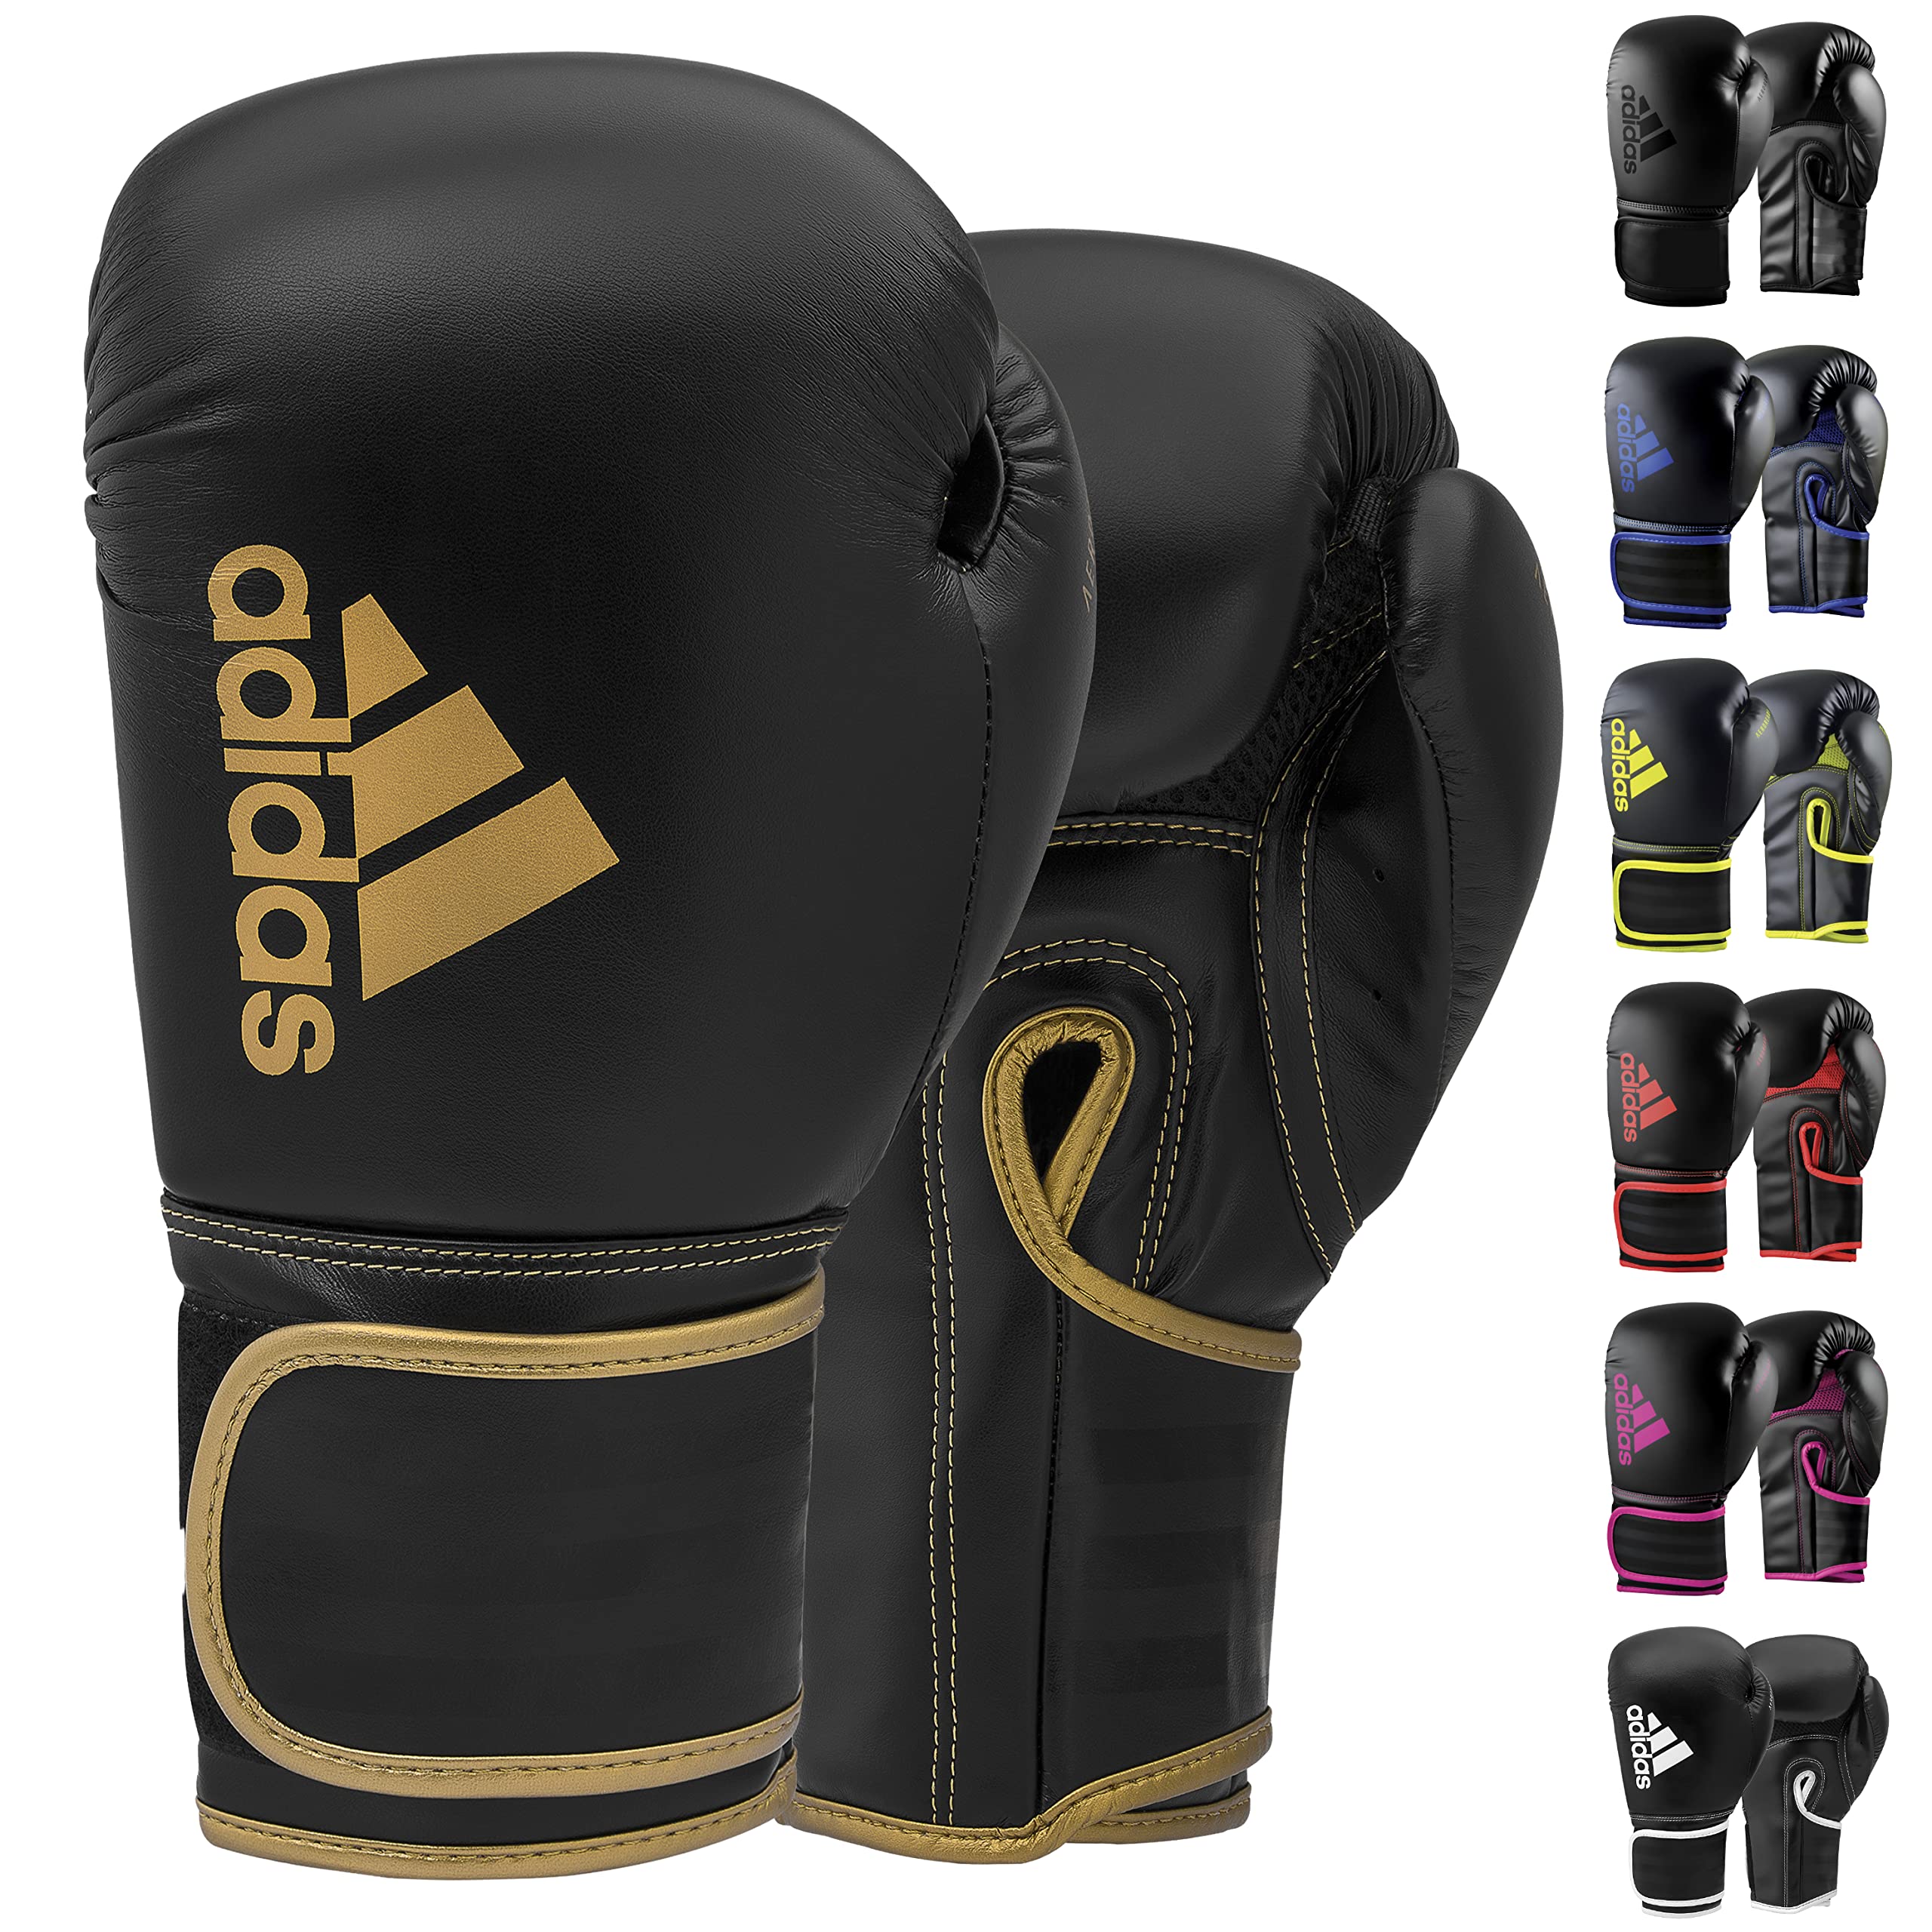 Adidas Boxing & for 80 for Gloves Bag, Boxing, - Men, Kickboxing, 12oz MMA, & Kids Black/Gold Hybrid Gloves Fitness Women - - Boxing Training